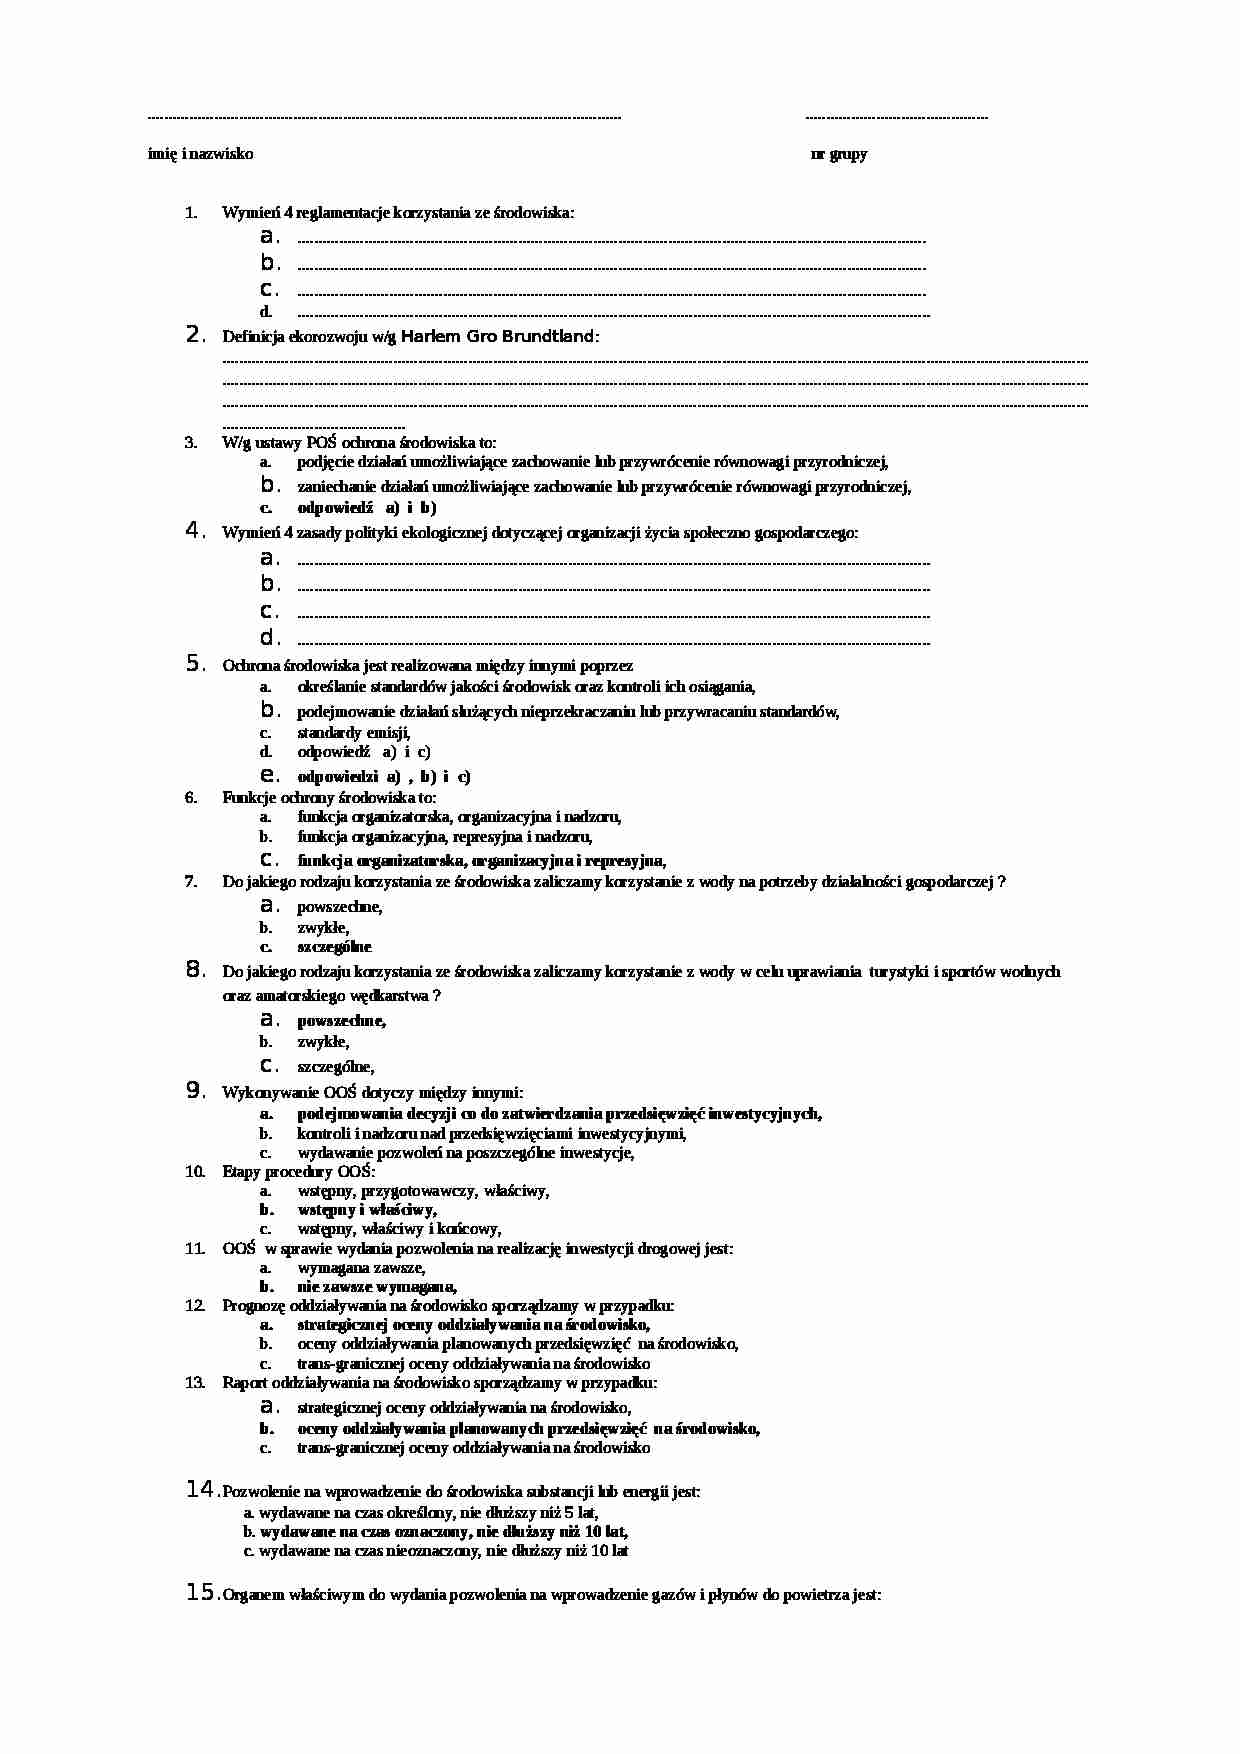 Funkcje ochorny środowiska - pytania na egzamin 2 - strona 1